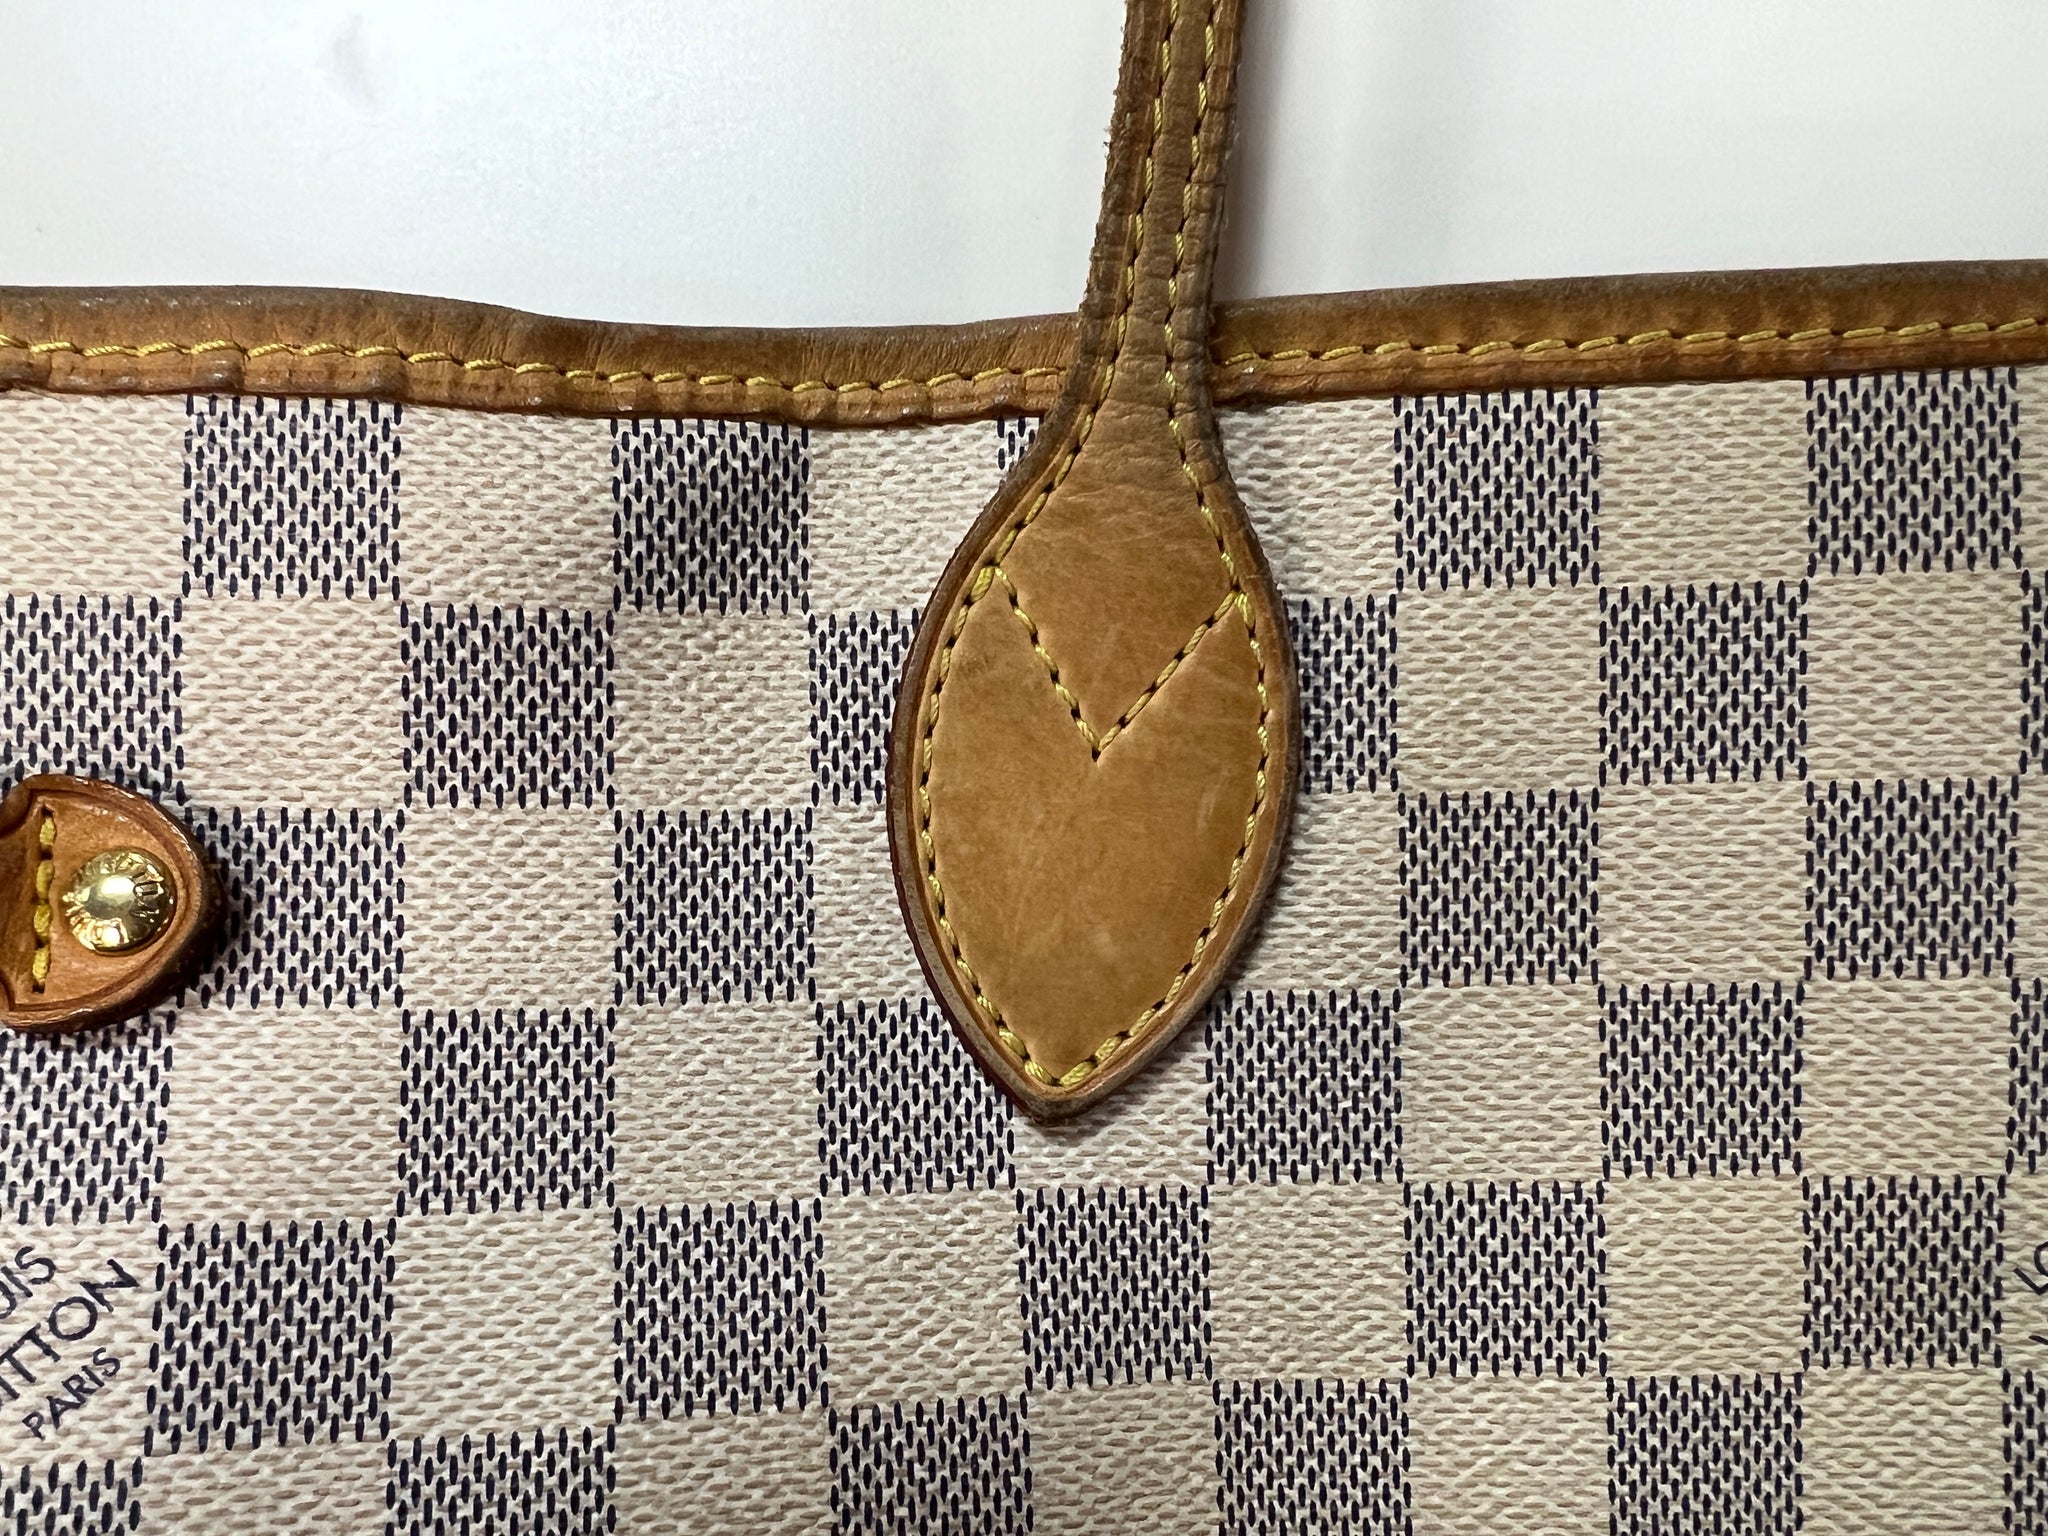 Louis Vuitton Damier Azur Checker Leather Neverful D. Azur Tote